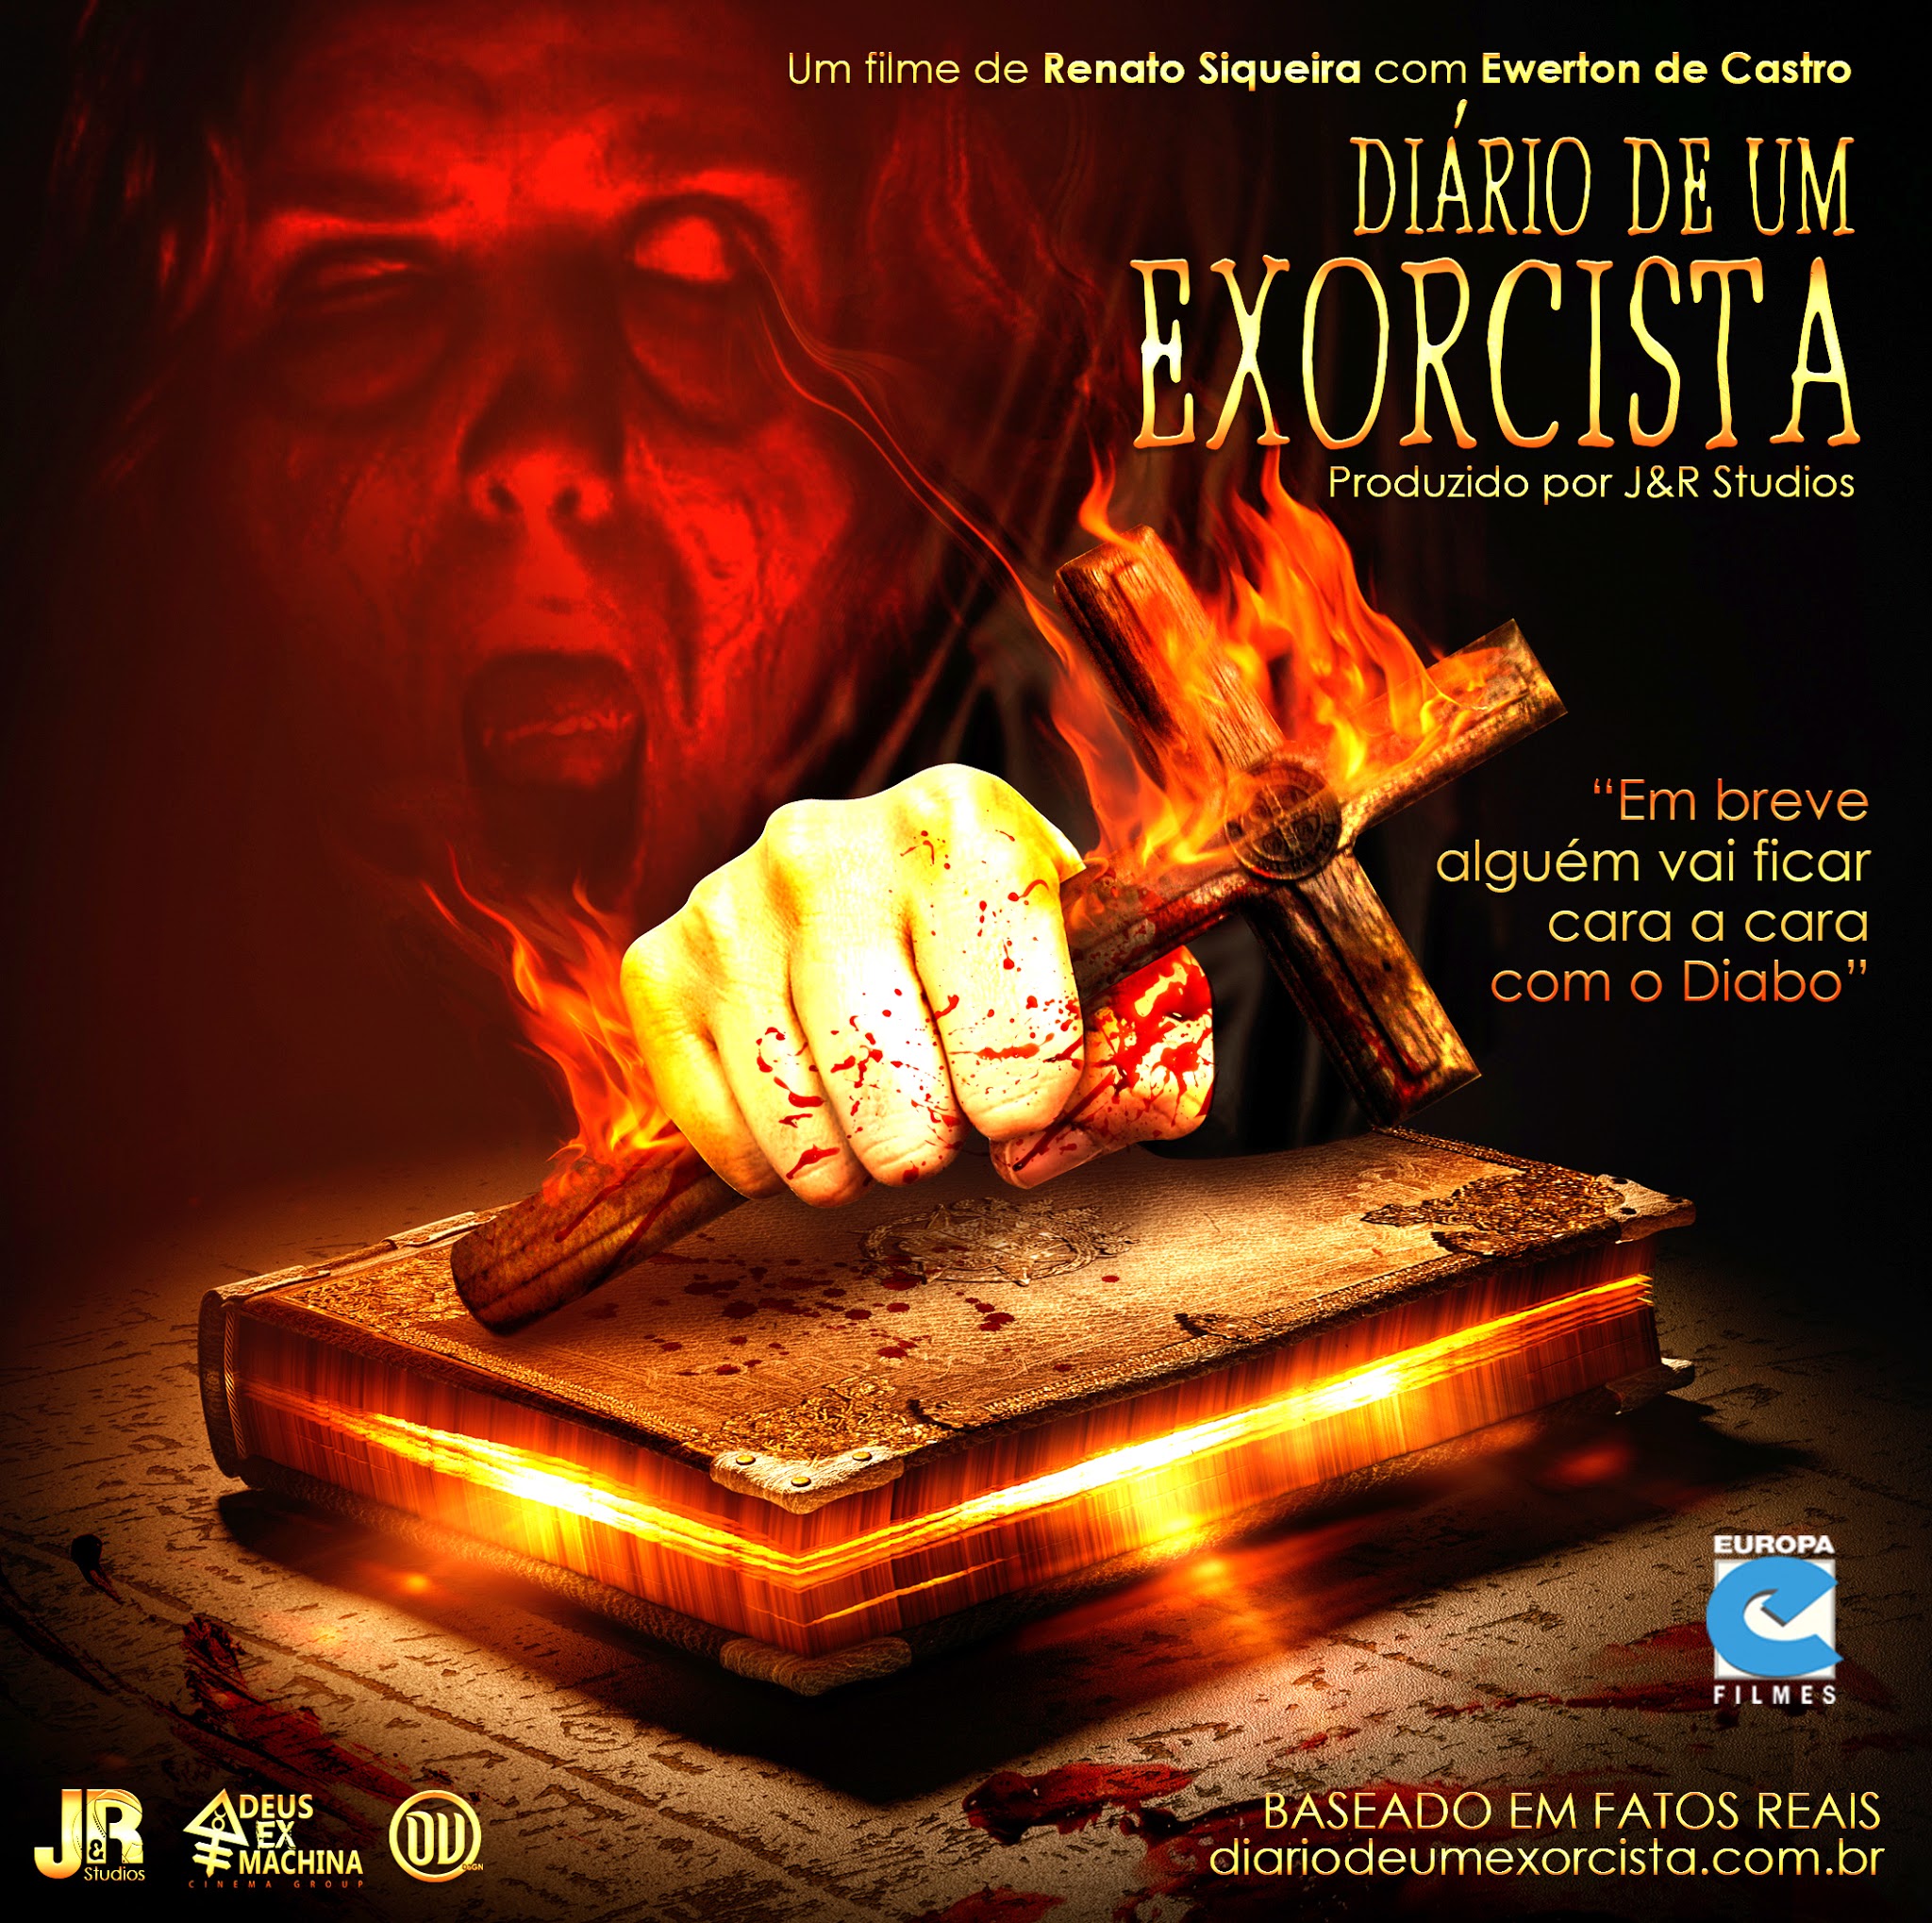 Primeiro filme da trilogia Diário de um Exorcista ganha data de lançamento no Brasil e novo poster